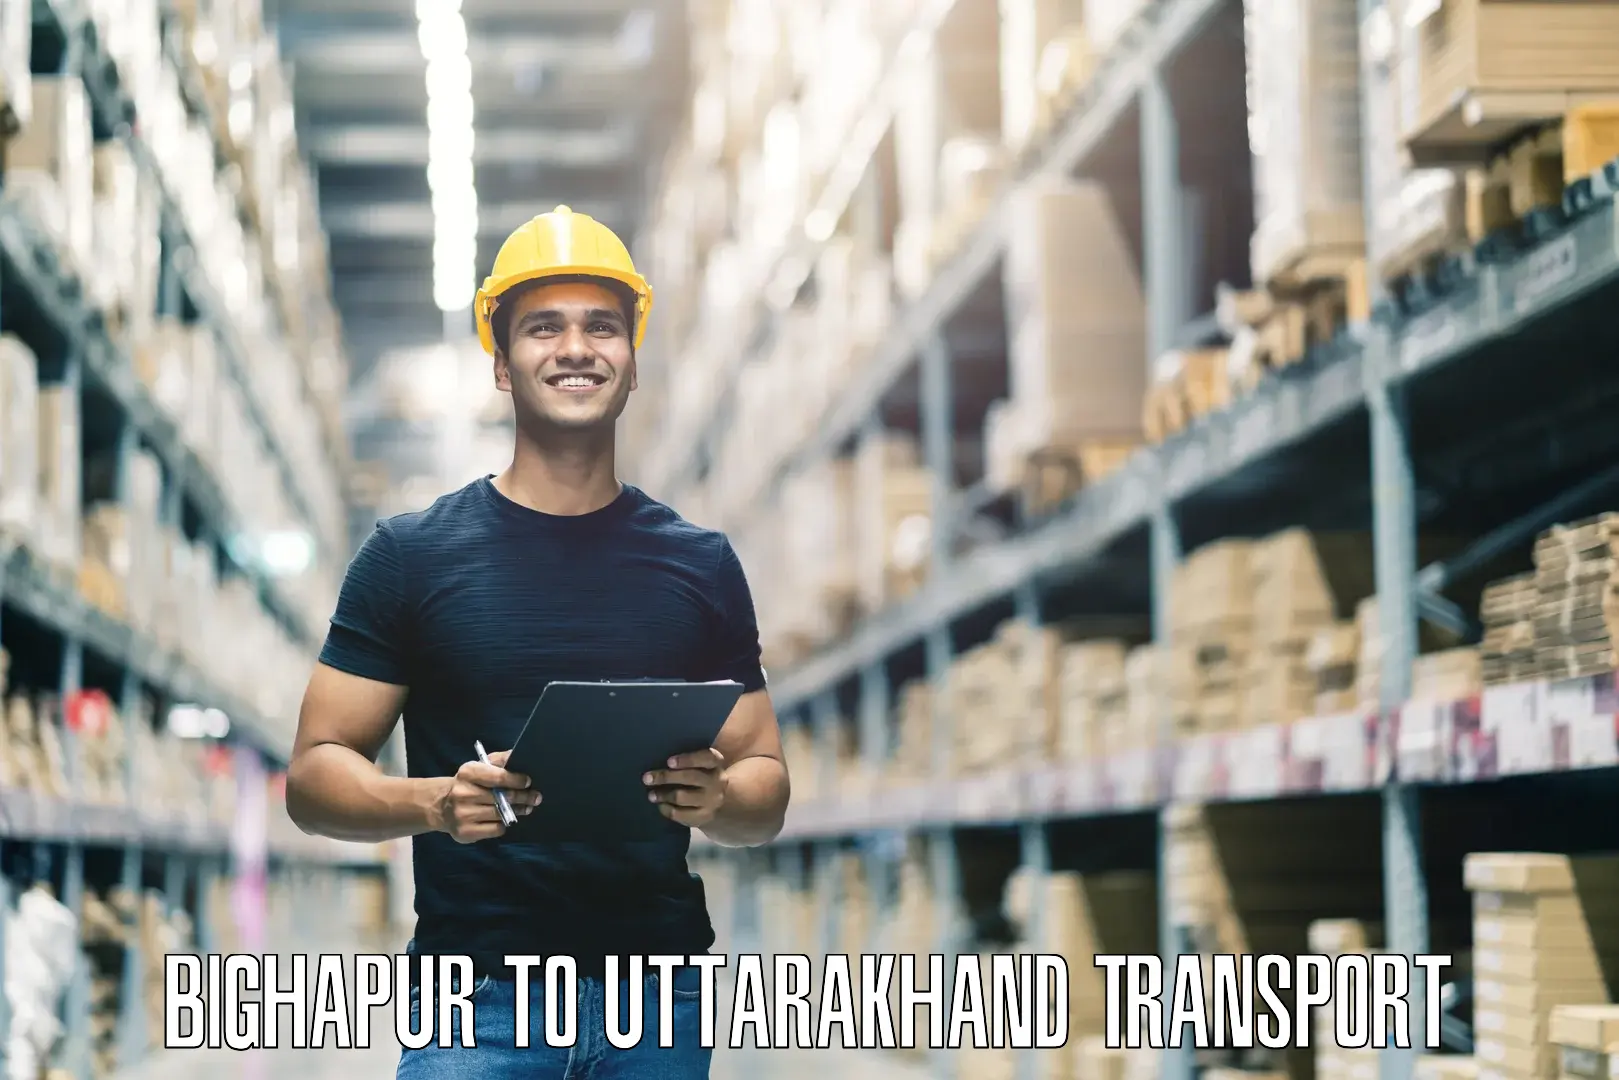 Interstate transport services Bighapur to Uttarkashi